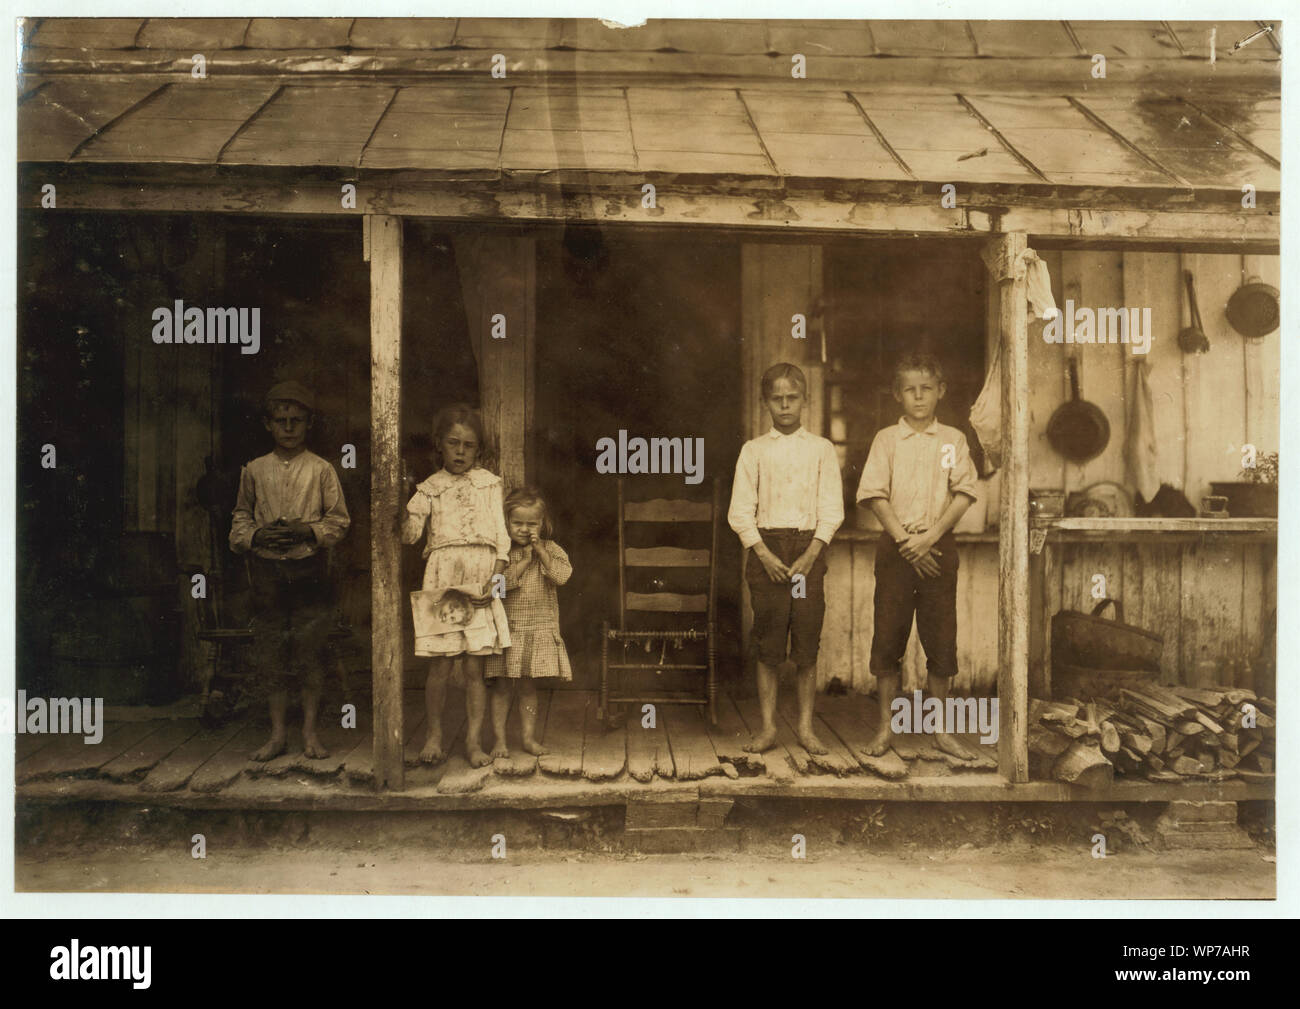 Жизнь в 1900. Детский труд в США 1900 годы. Америка 1900 люди. Льюис Хайн фотограф труд детей. Льюис Хайн детский труд.